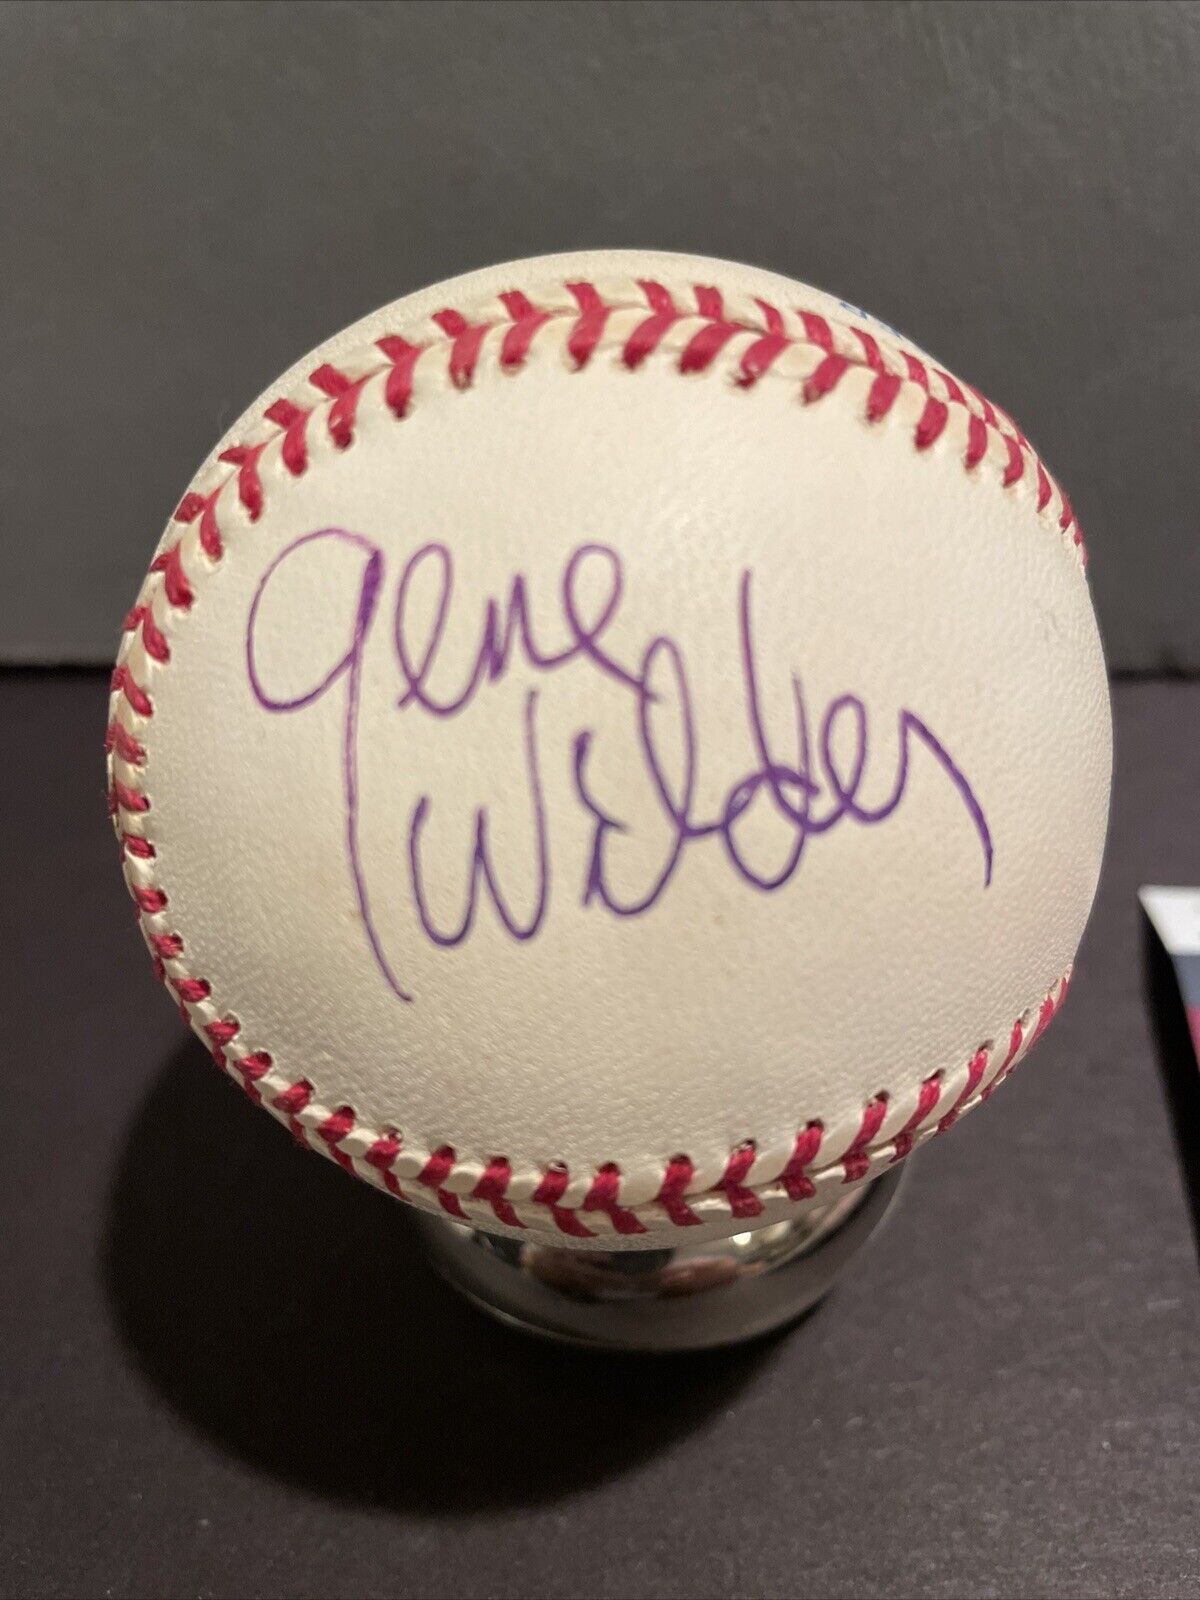 Gene Wilder Autographed Signed Baseball JSA Certified 